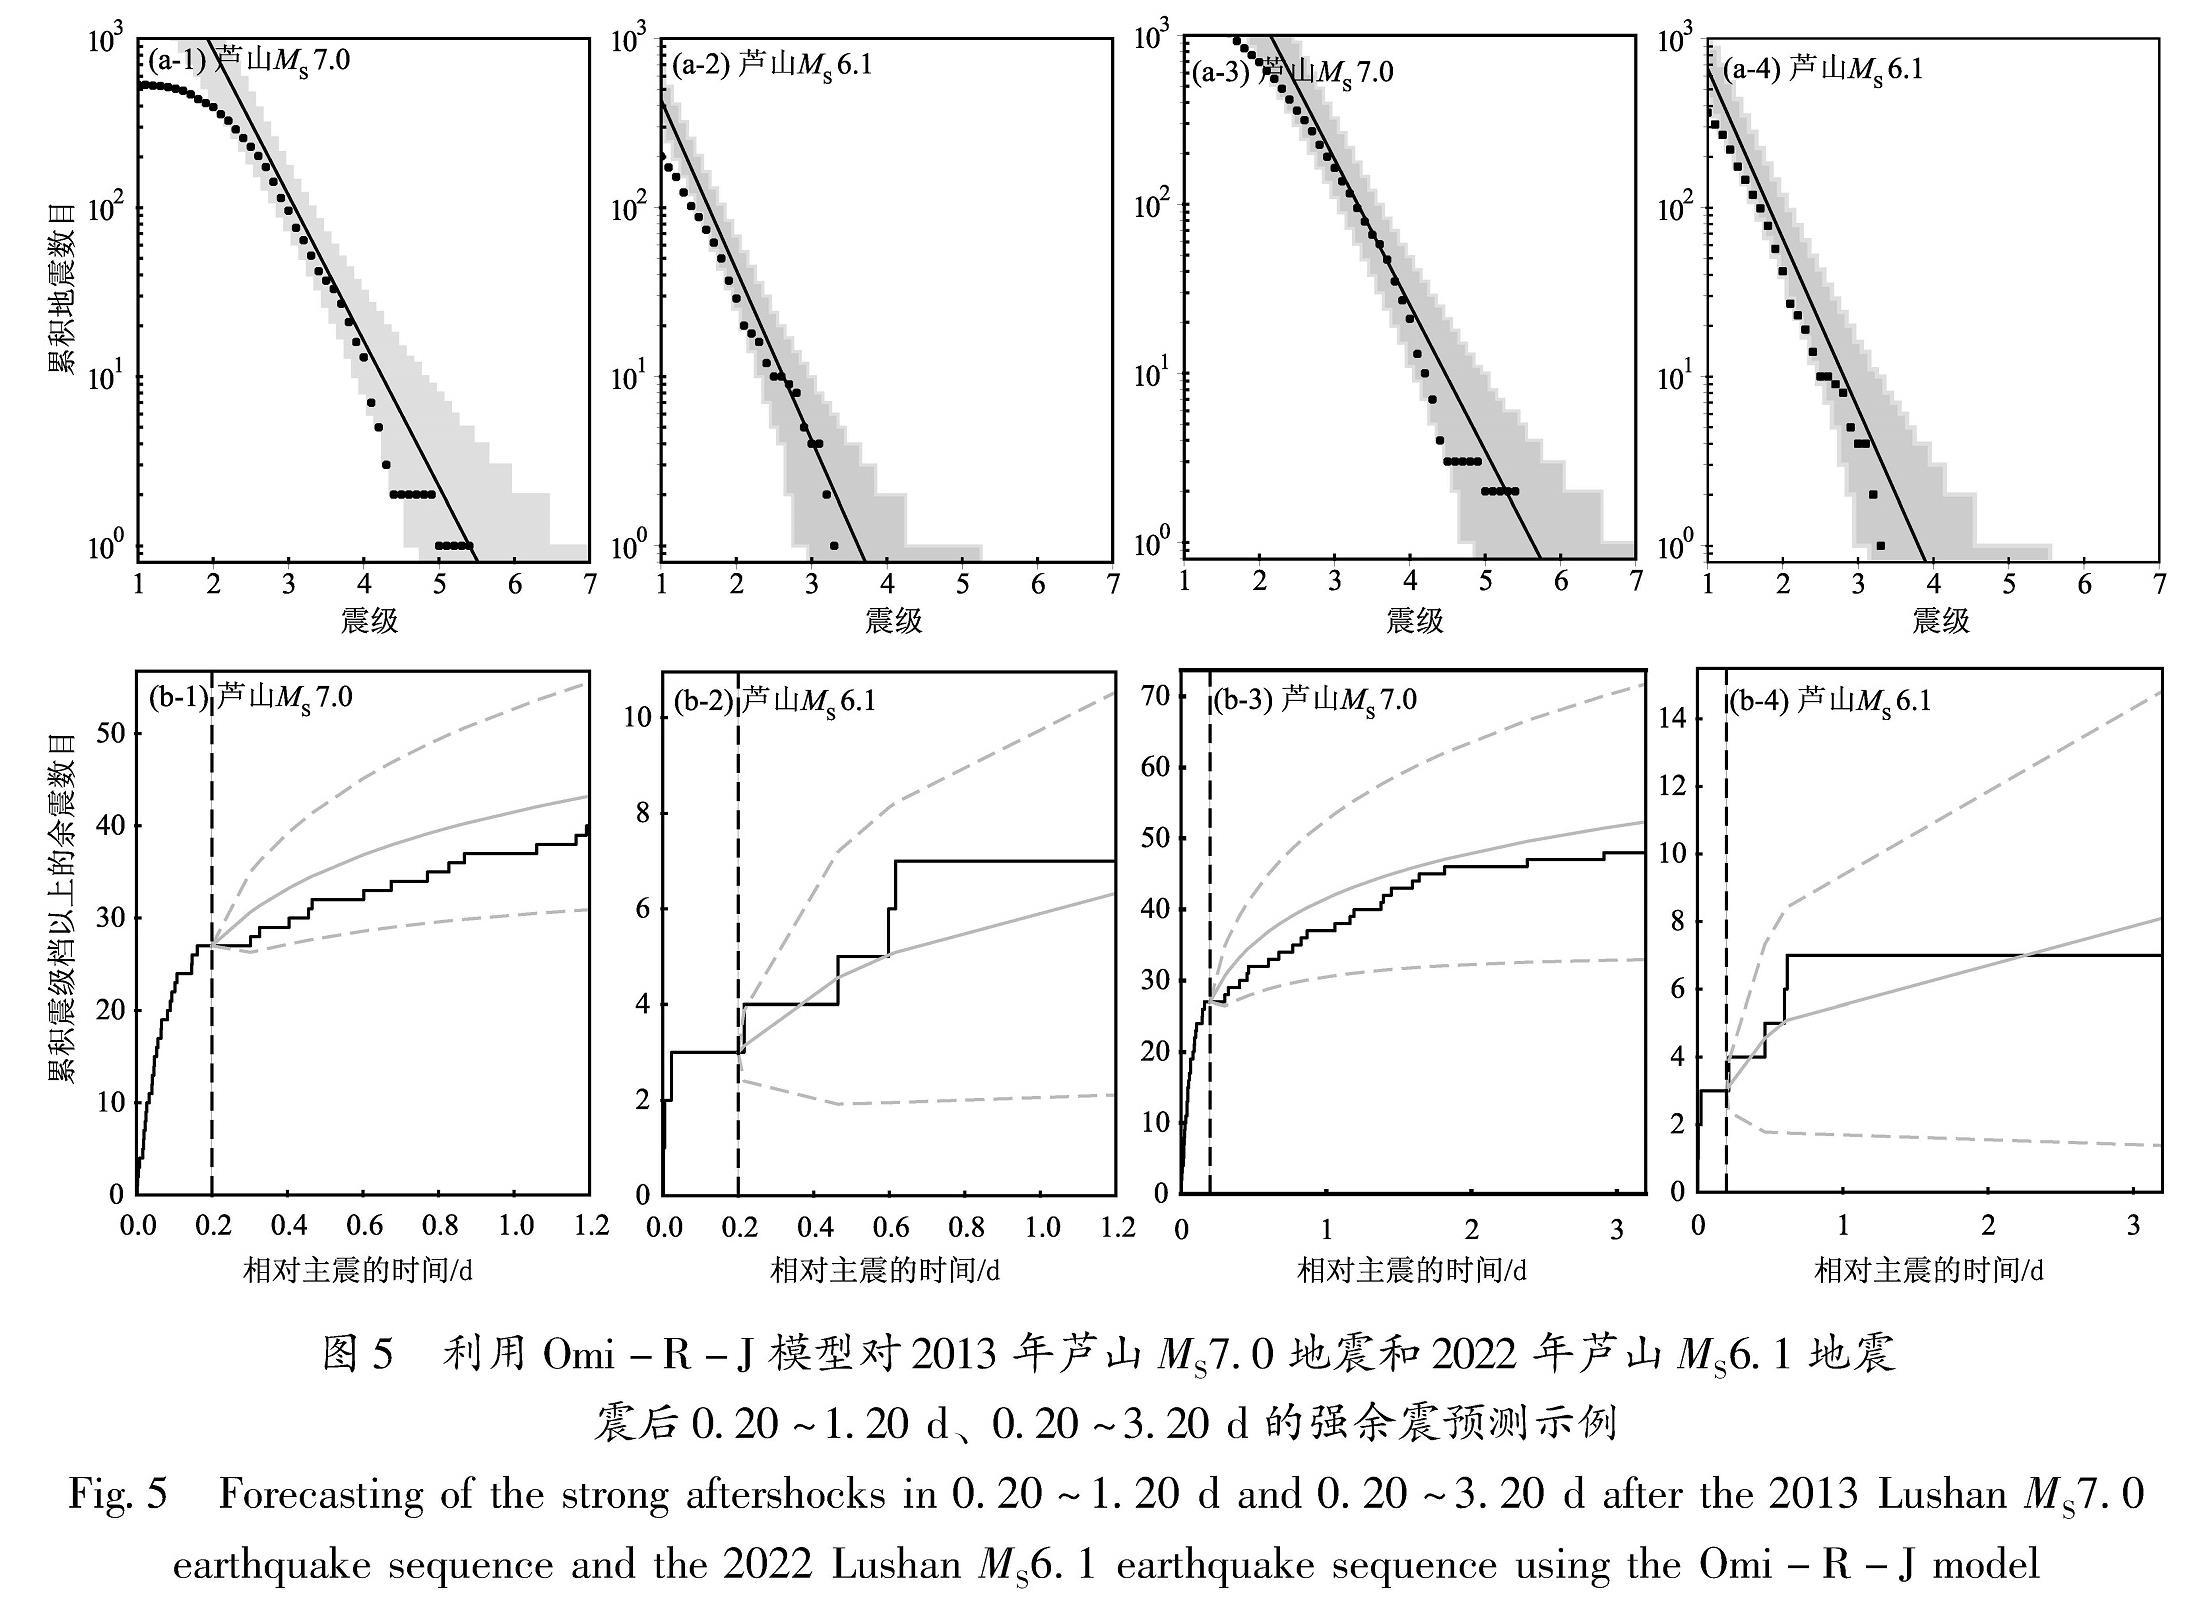 图5 利用Omi-R-J模型对2013年芦山MS7.0地震和2022年芦山MS6.1地震震后0.20～1.20 d、0.20～3.20 d的强余震预测示例<br/>Fig.5 Forecasting of the strong aftershocks in 0.20～1.20 d and 0.20～3.20 d after the 2013 Lushan MS7.0 earthquake sequence and the 2022 Lushan MS6.1 earthquake sequence using the Omi-R-J model